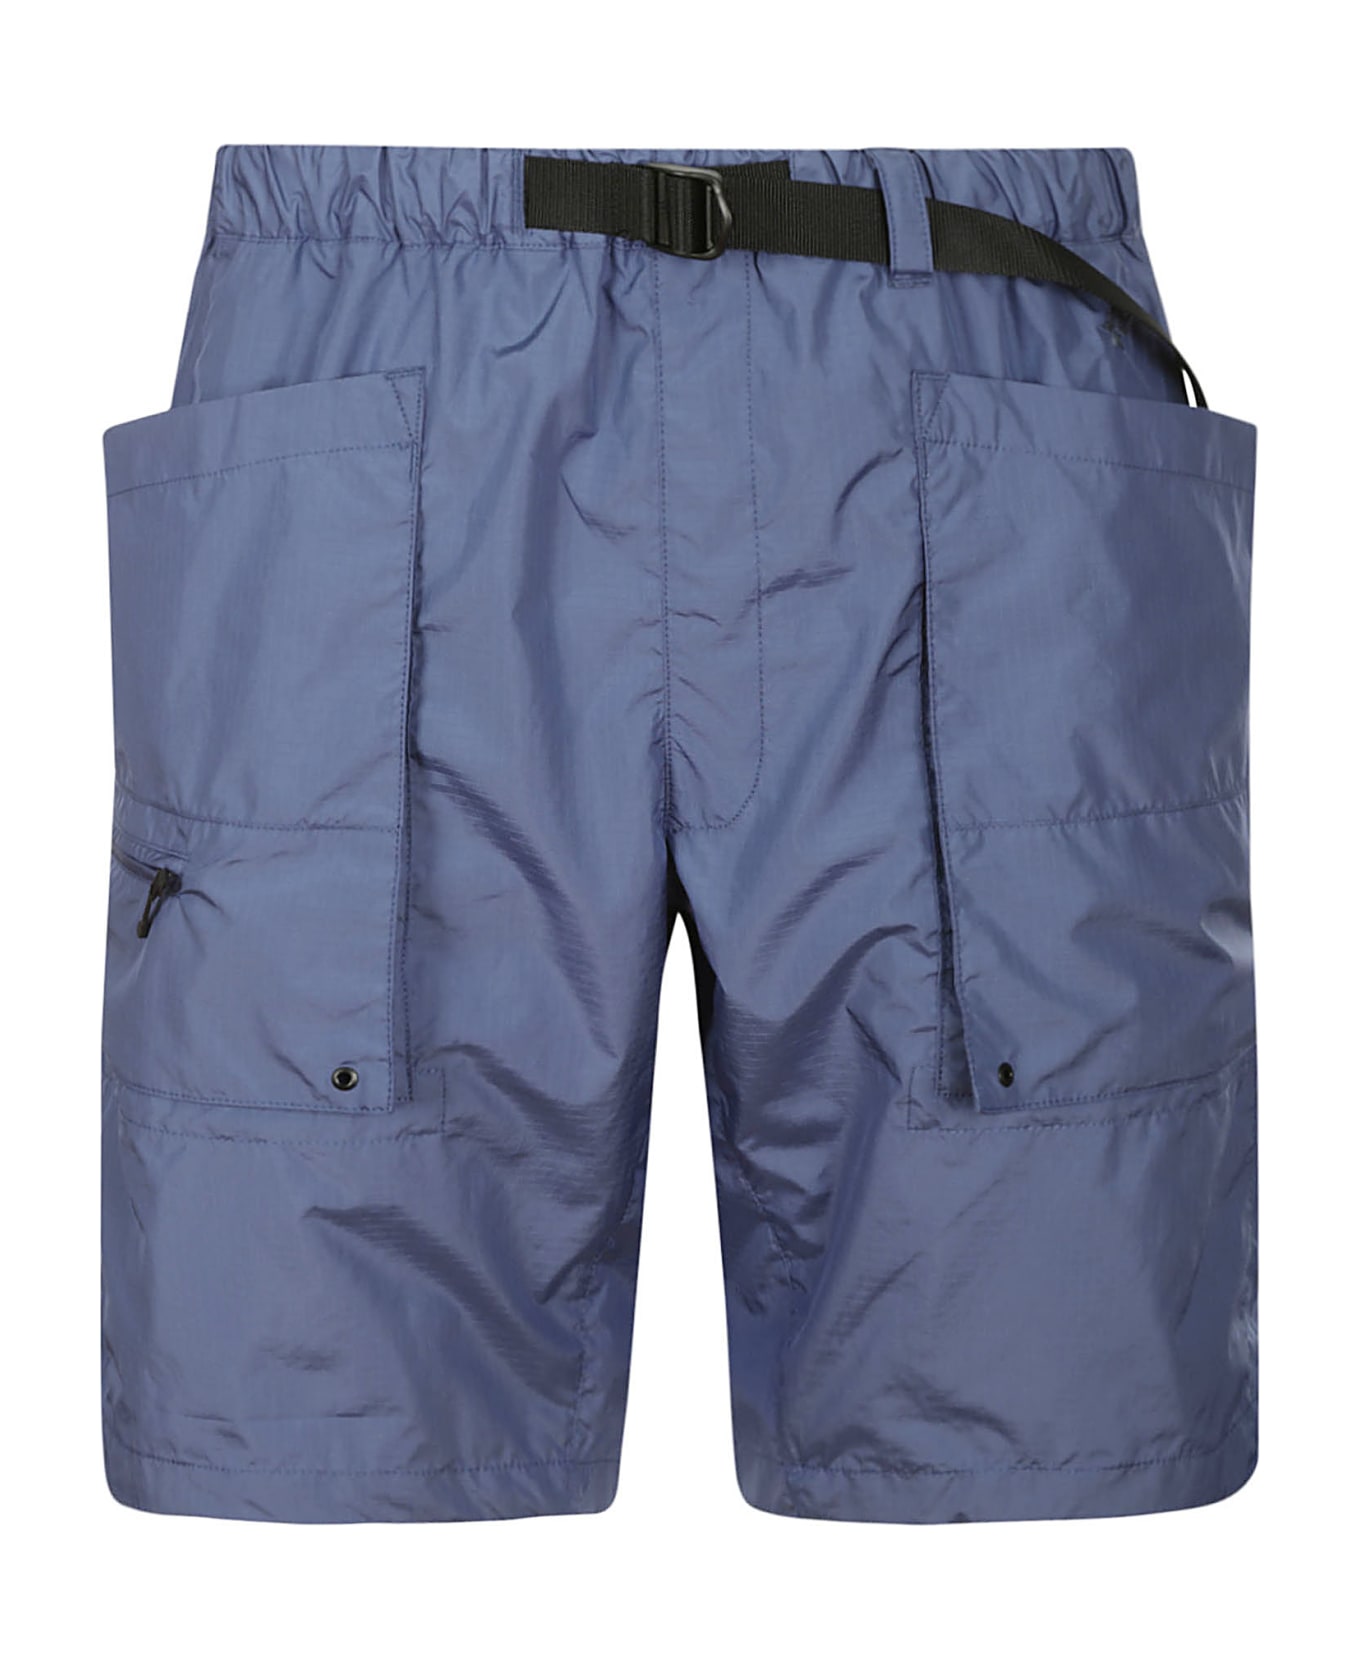 Goldwin Ripstop Cargo Shorts - Hb Horizon Blue